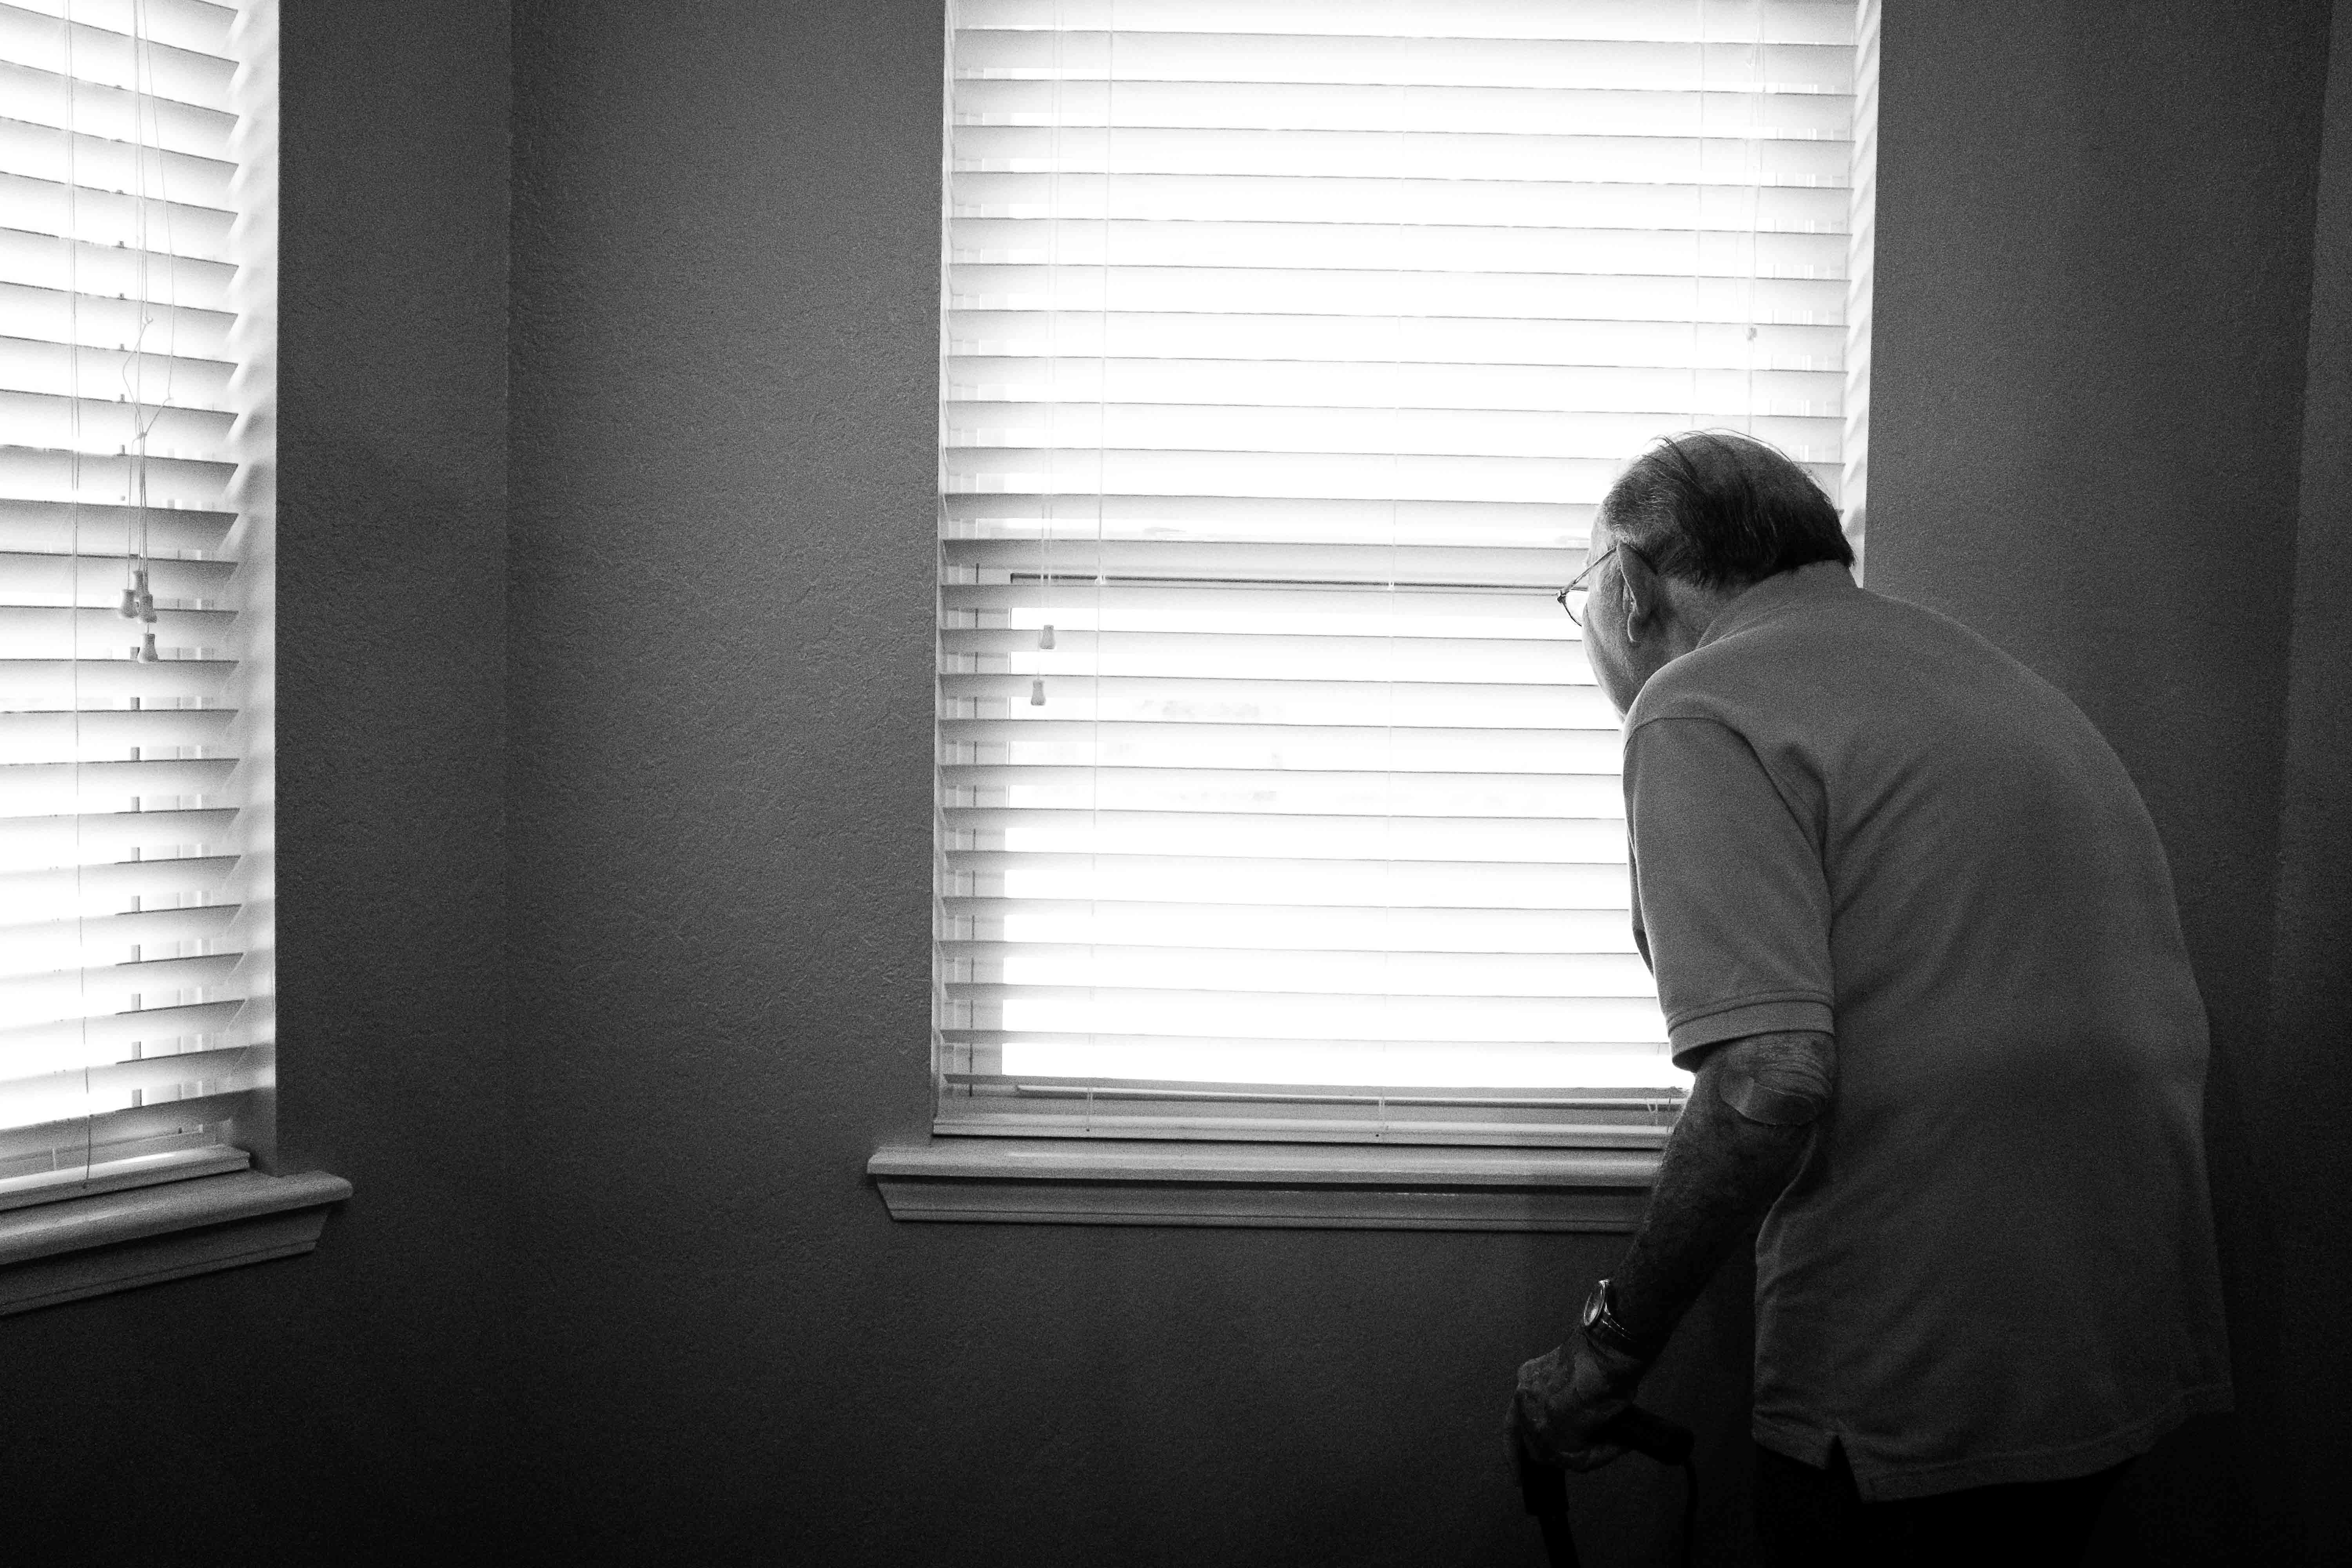 Idosos são os que mais sofrem com depressão e acreditam em mitos, mostra pesquisa. Acima: idoso espiando pelas frestas da cortina dentro de casa. (Foto: Alex Boyd/Unsplash)